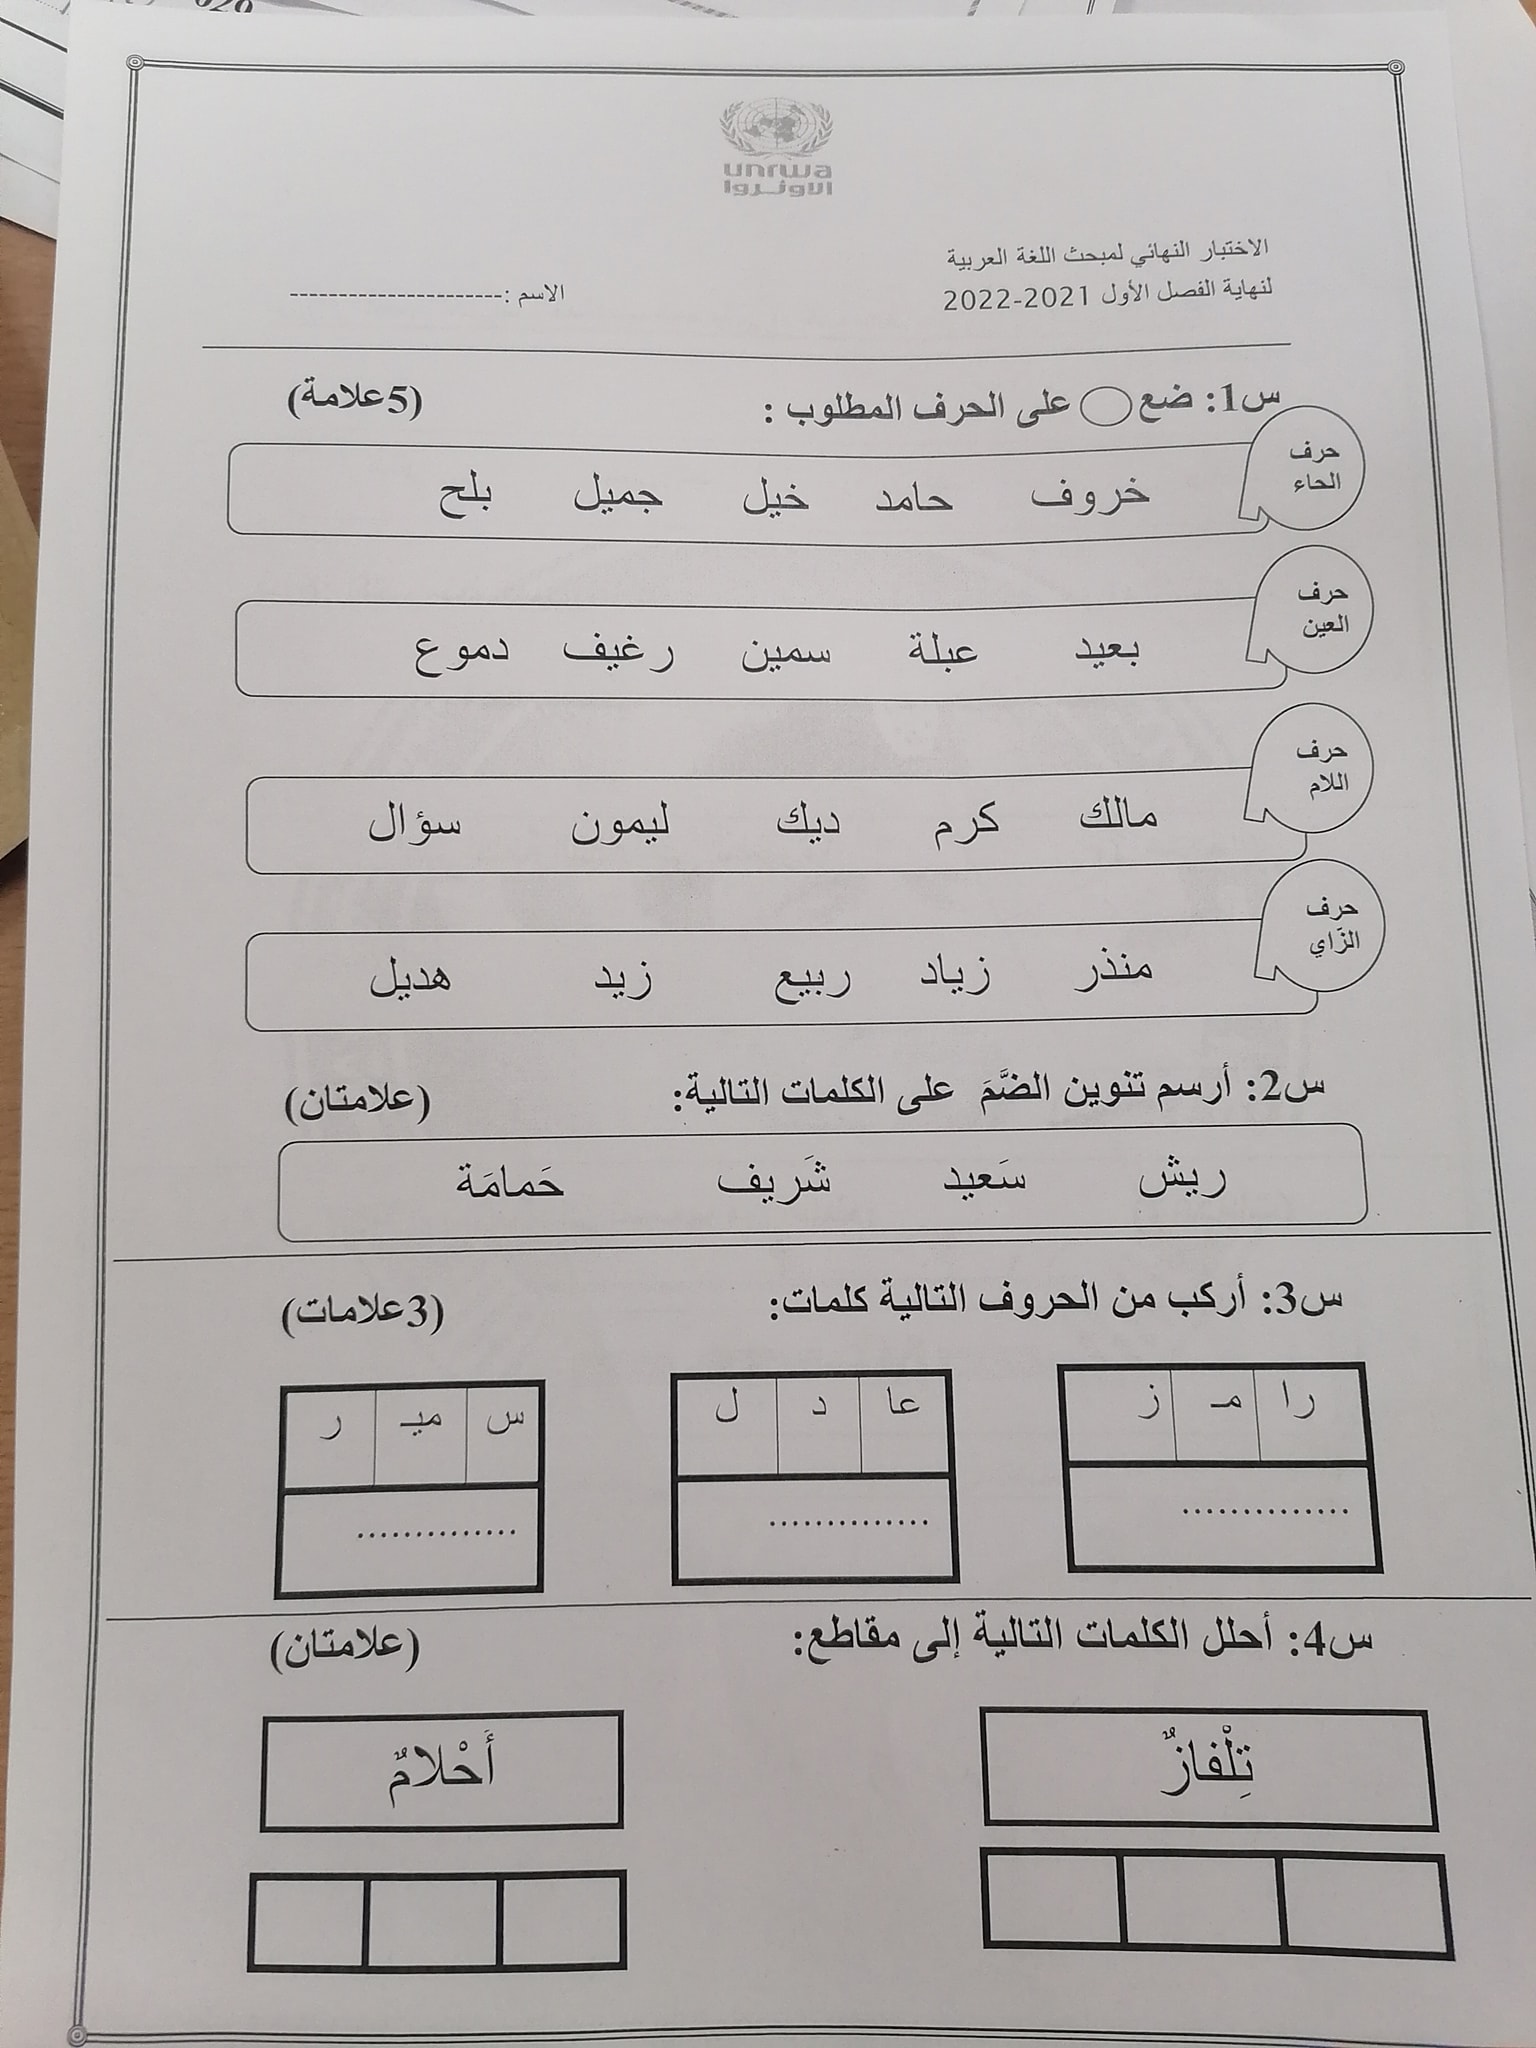 بالصور امتحان لغة عربية نهائي للصف الاول الفصل الاول 2021